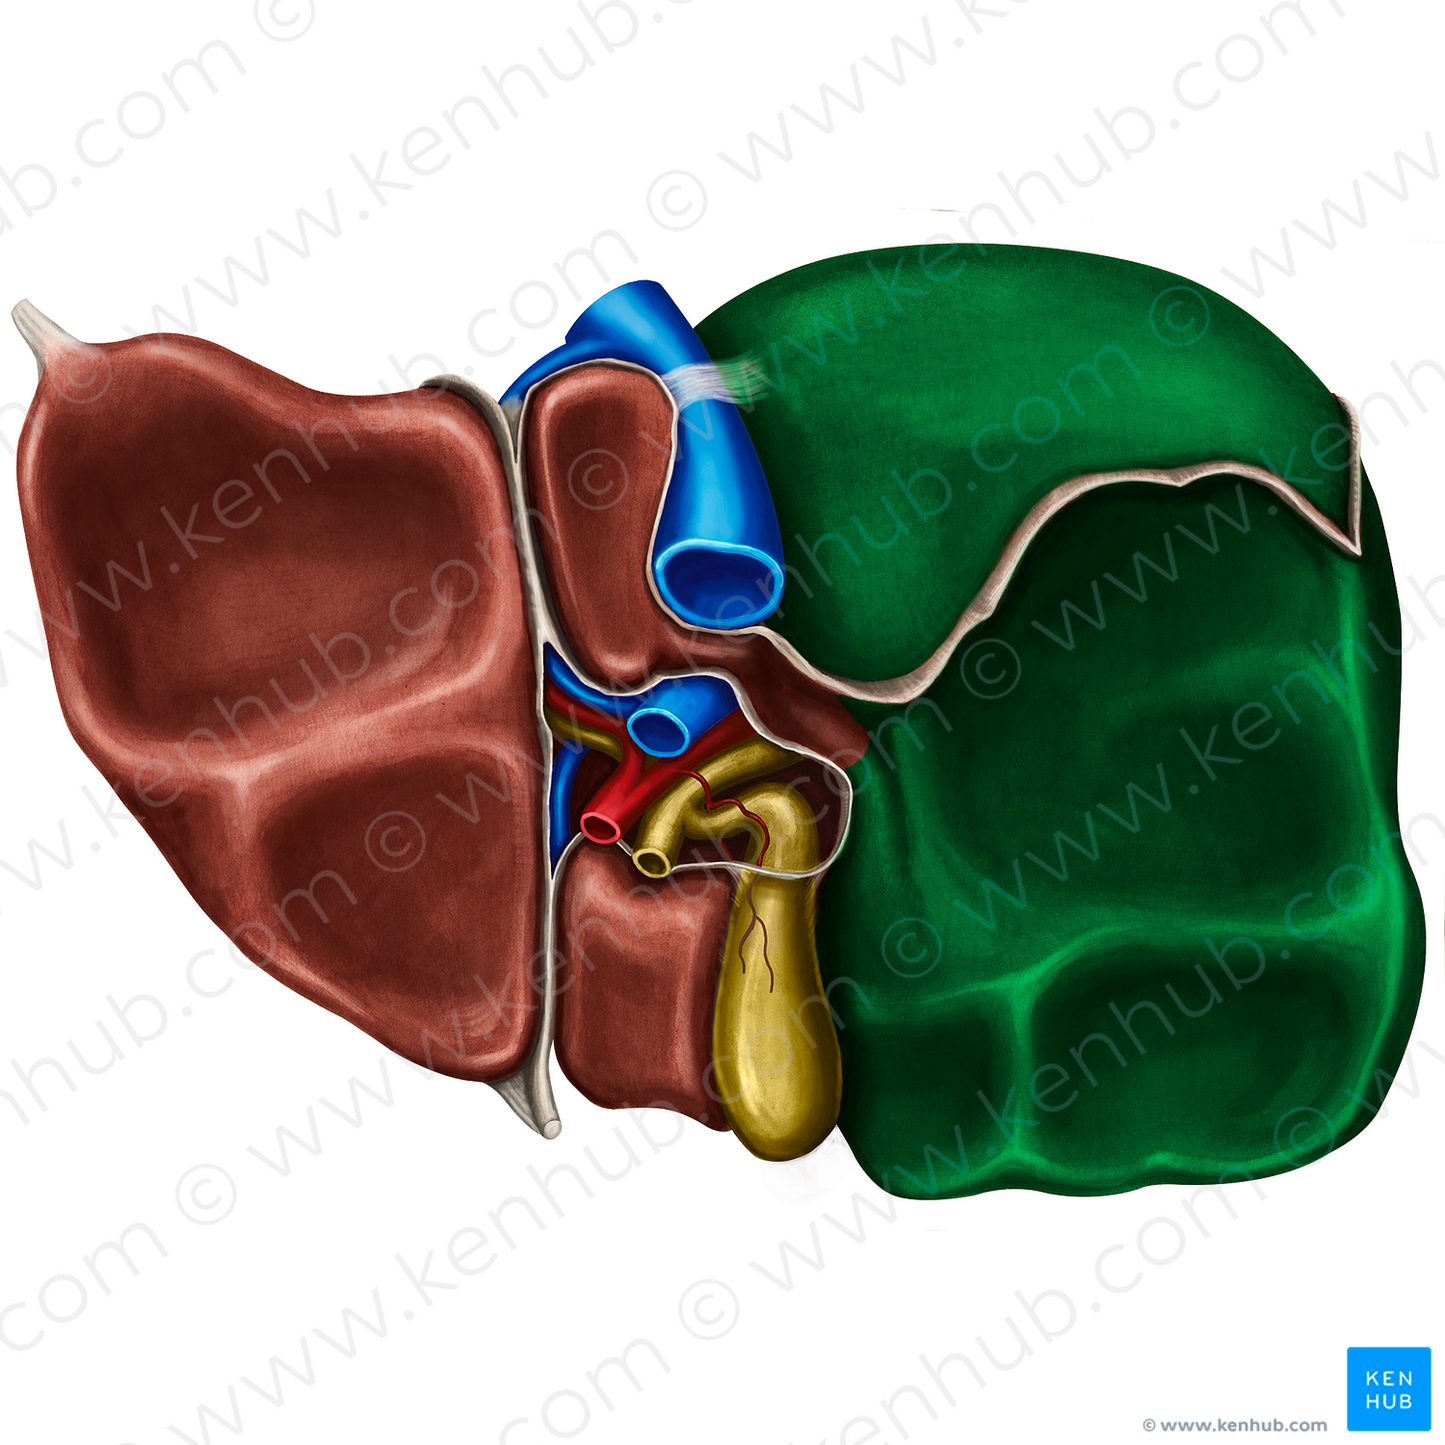 Right lobe of liver (#4788)